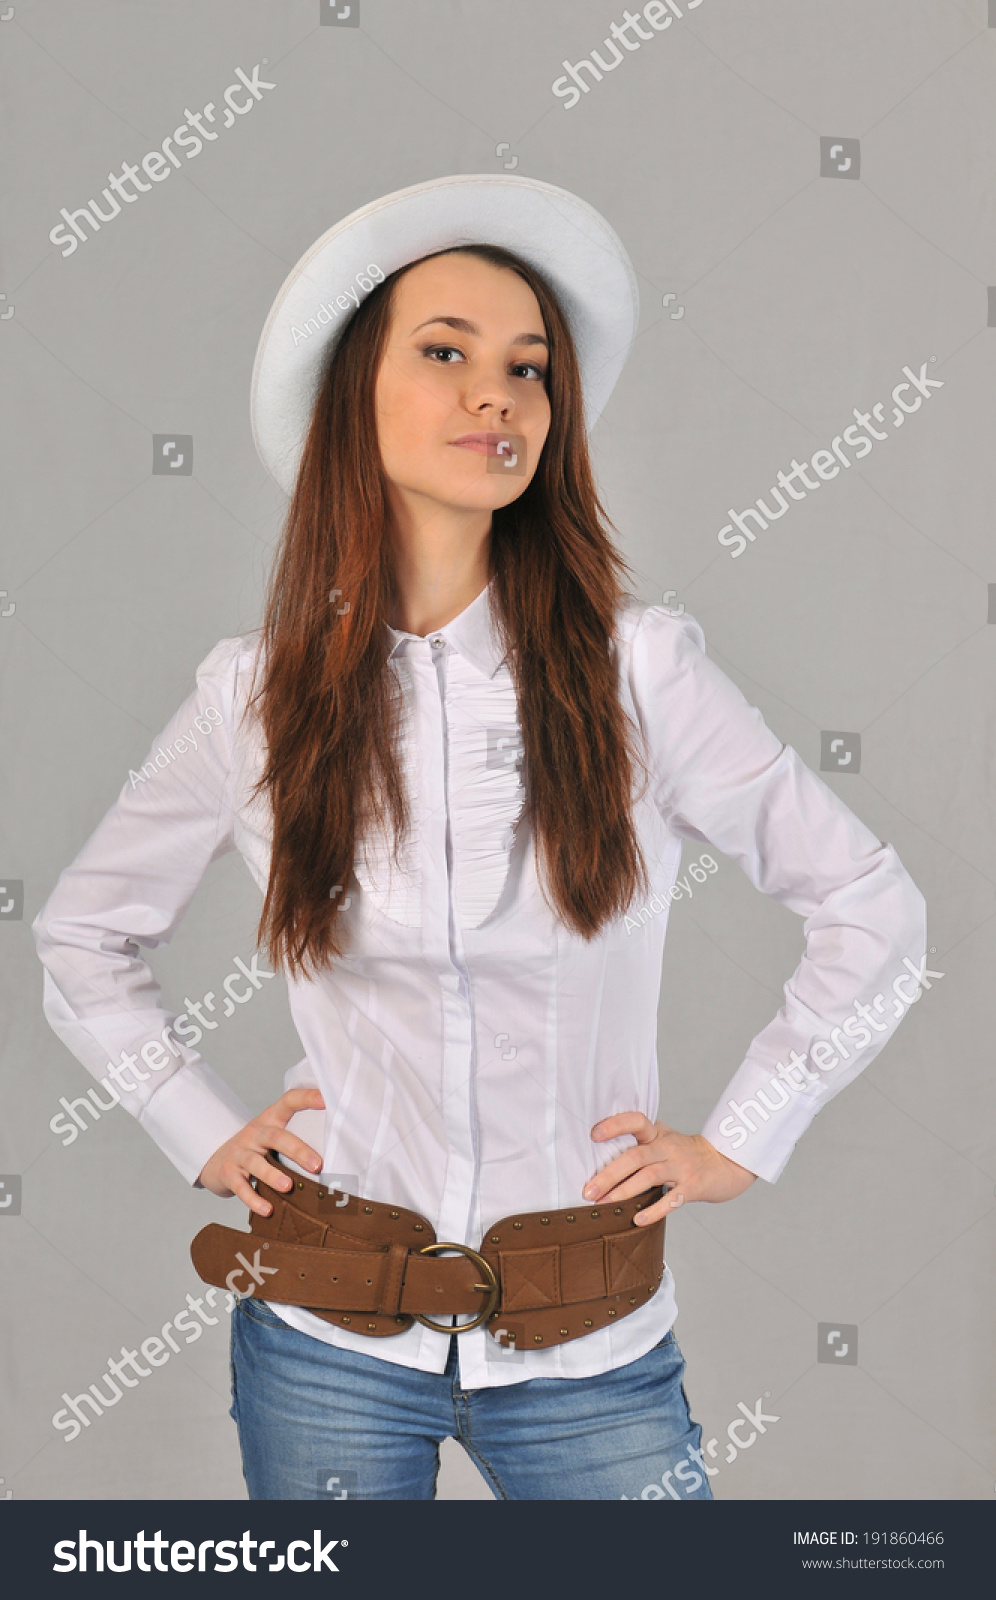 女孩在一件白色衬衣和牛仔裤上弯着腰,双手放